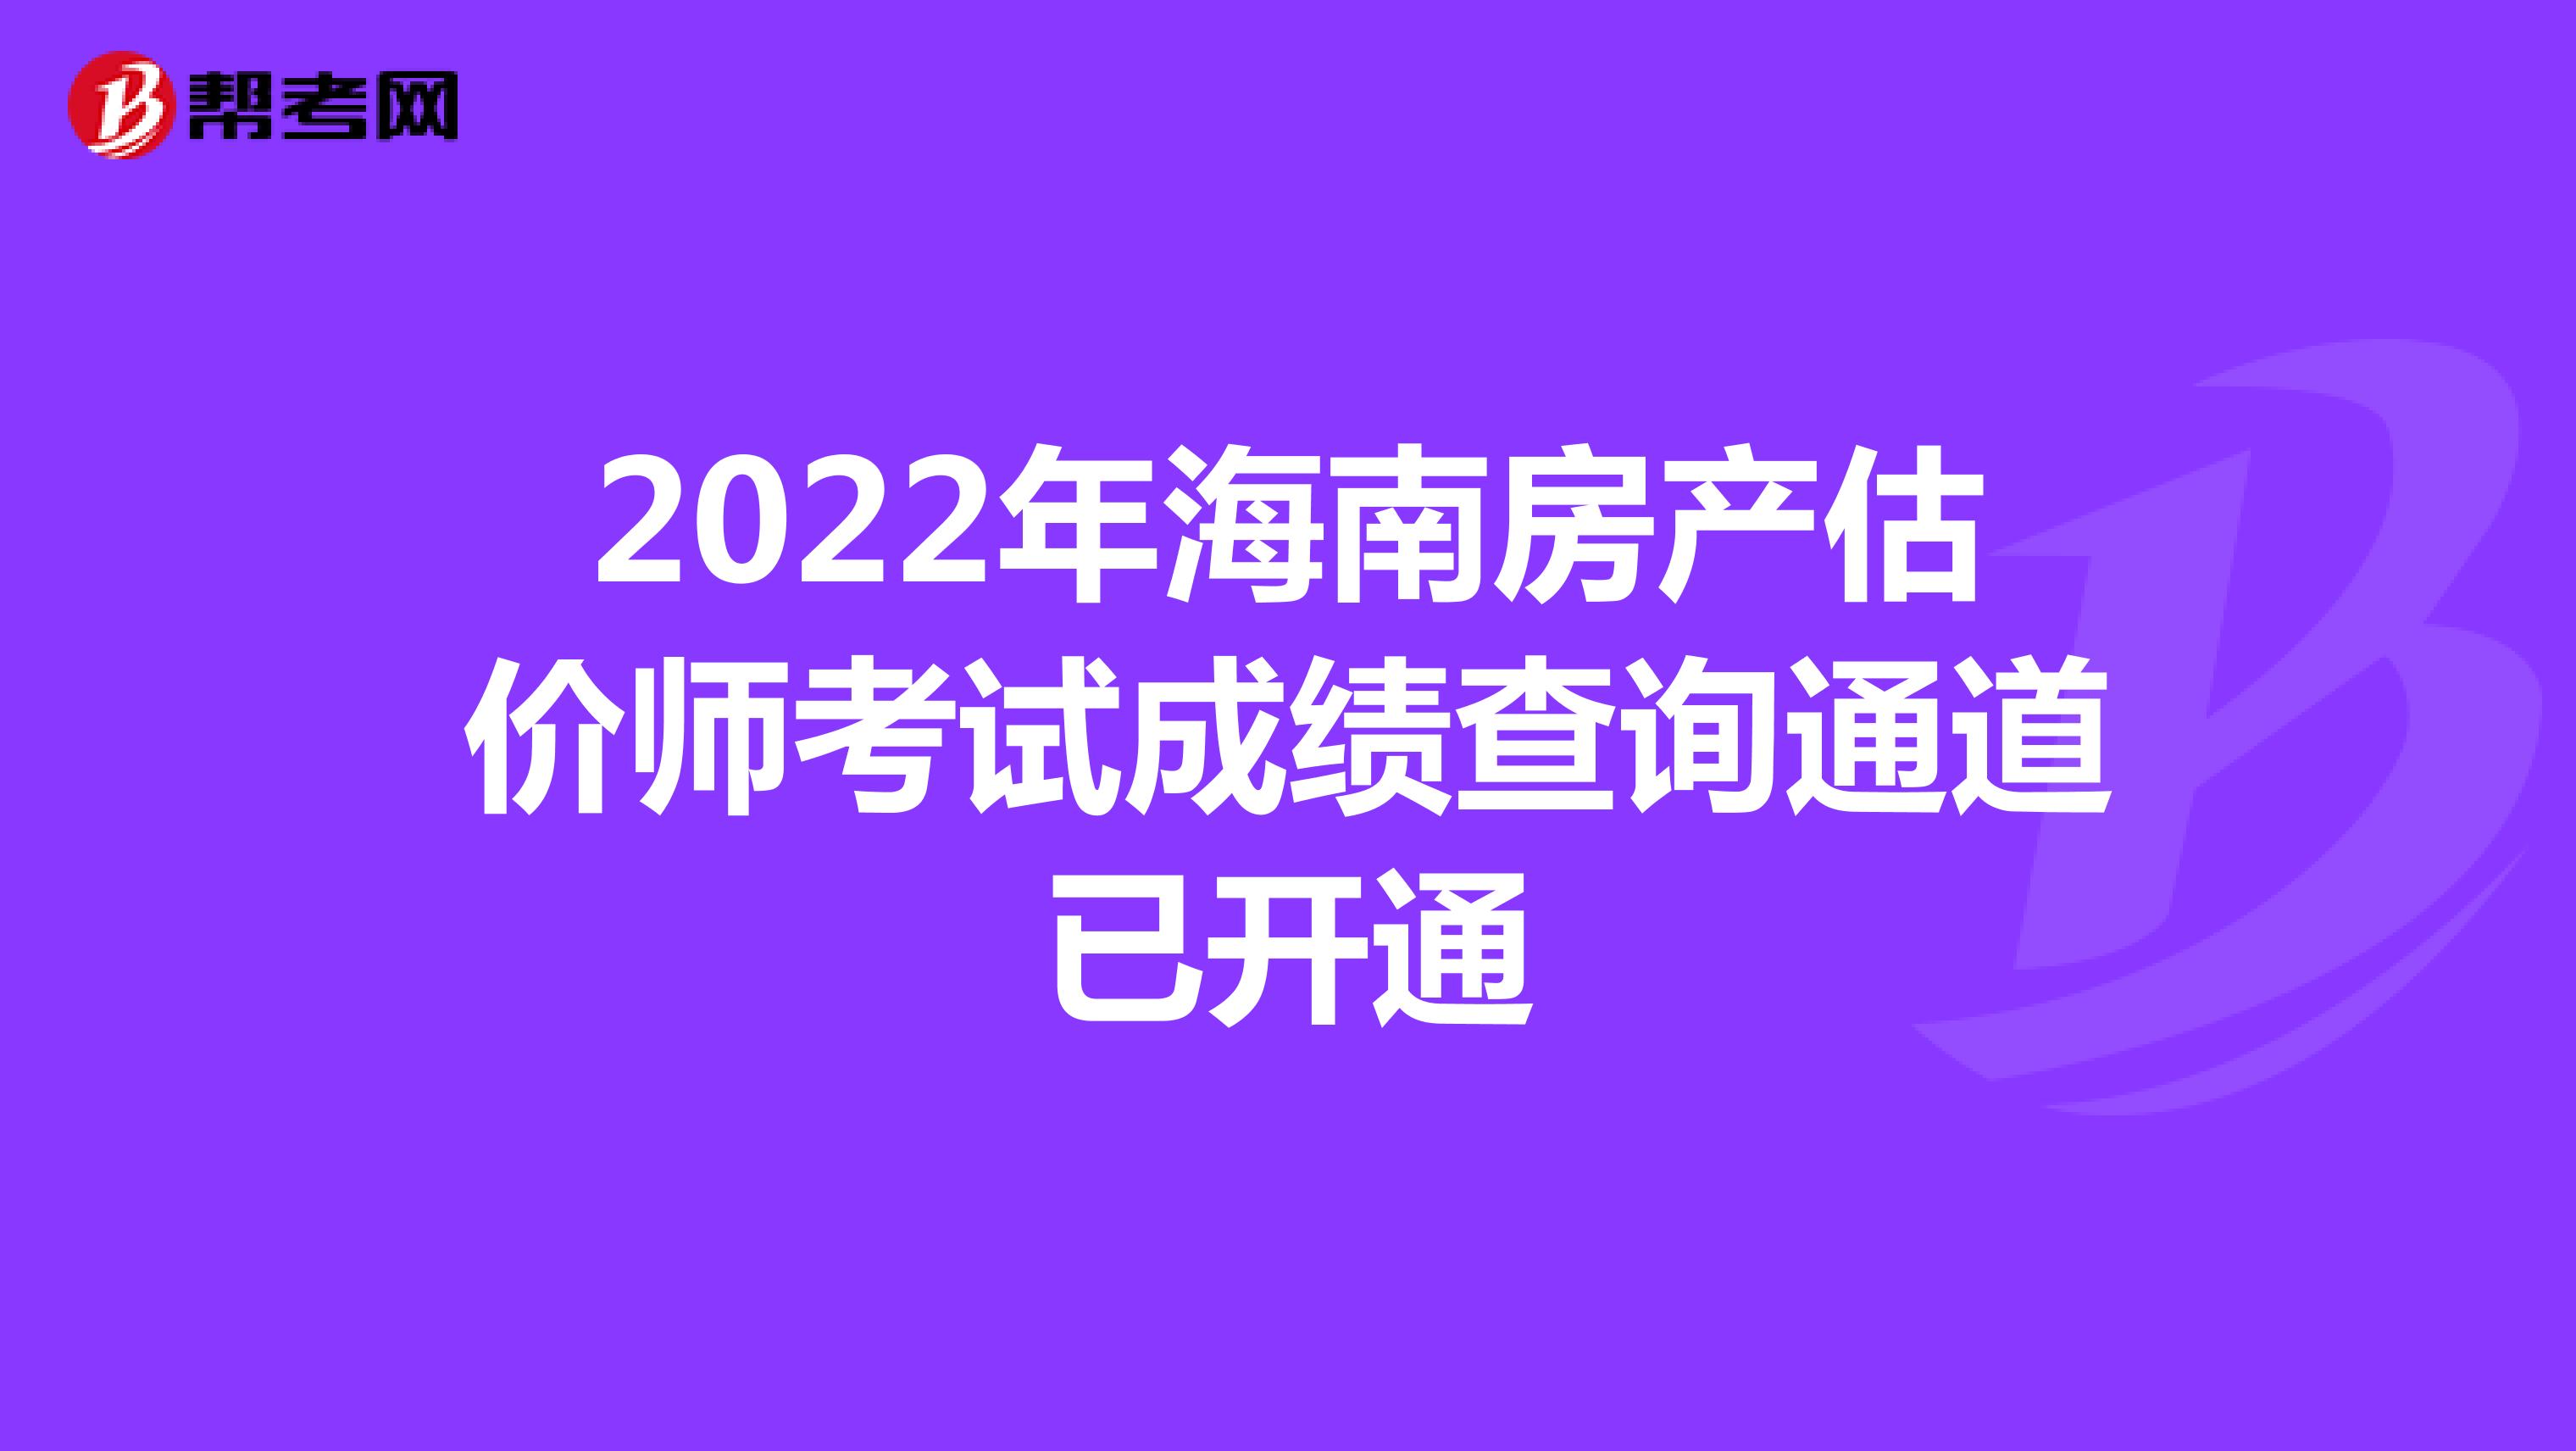 2022年海南房产估价师考试成绩查询通道已开通